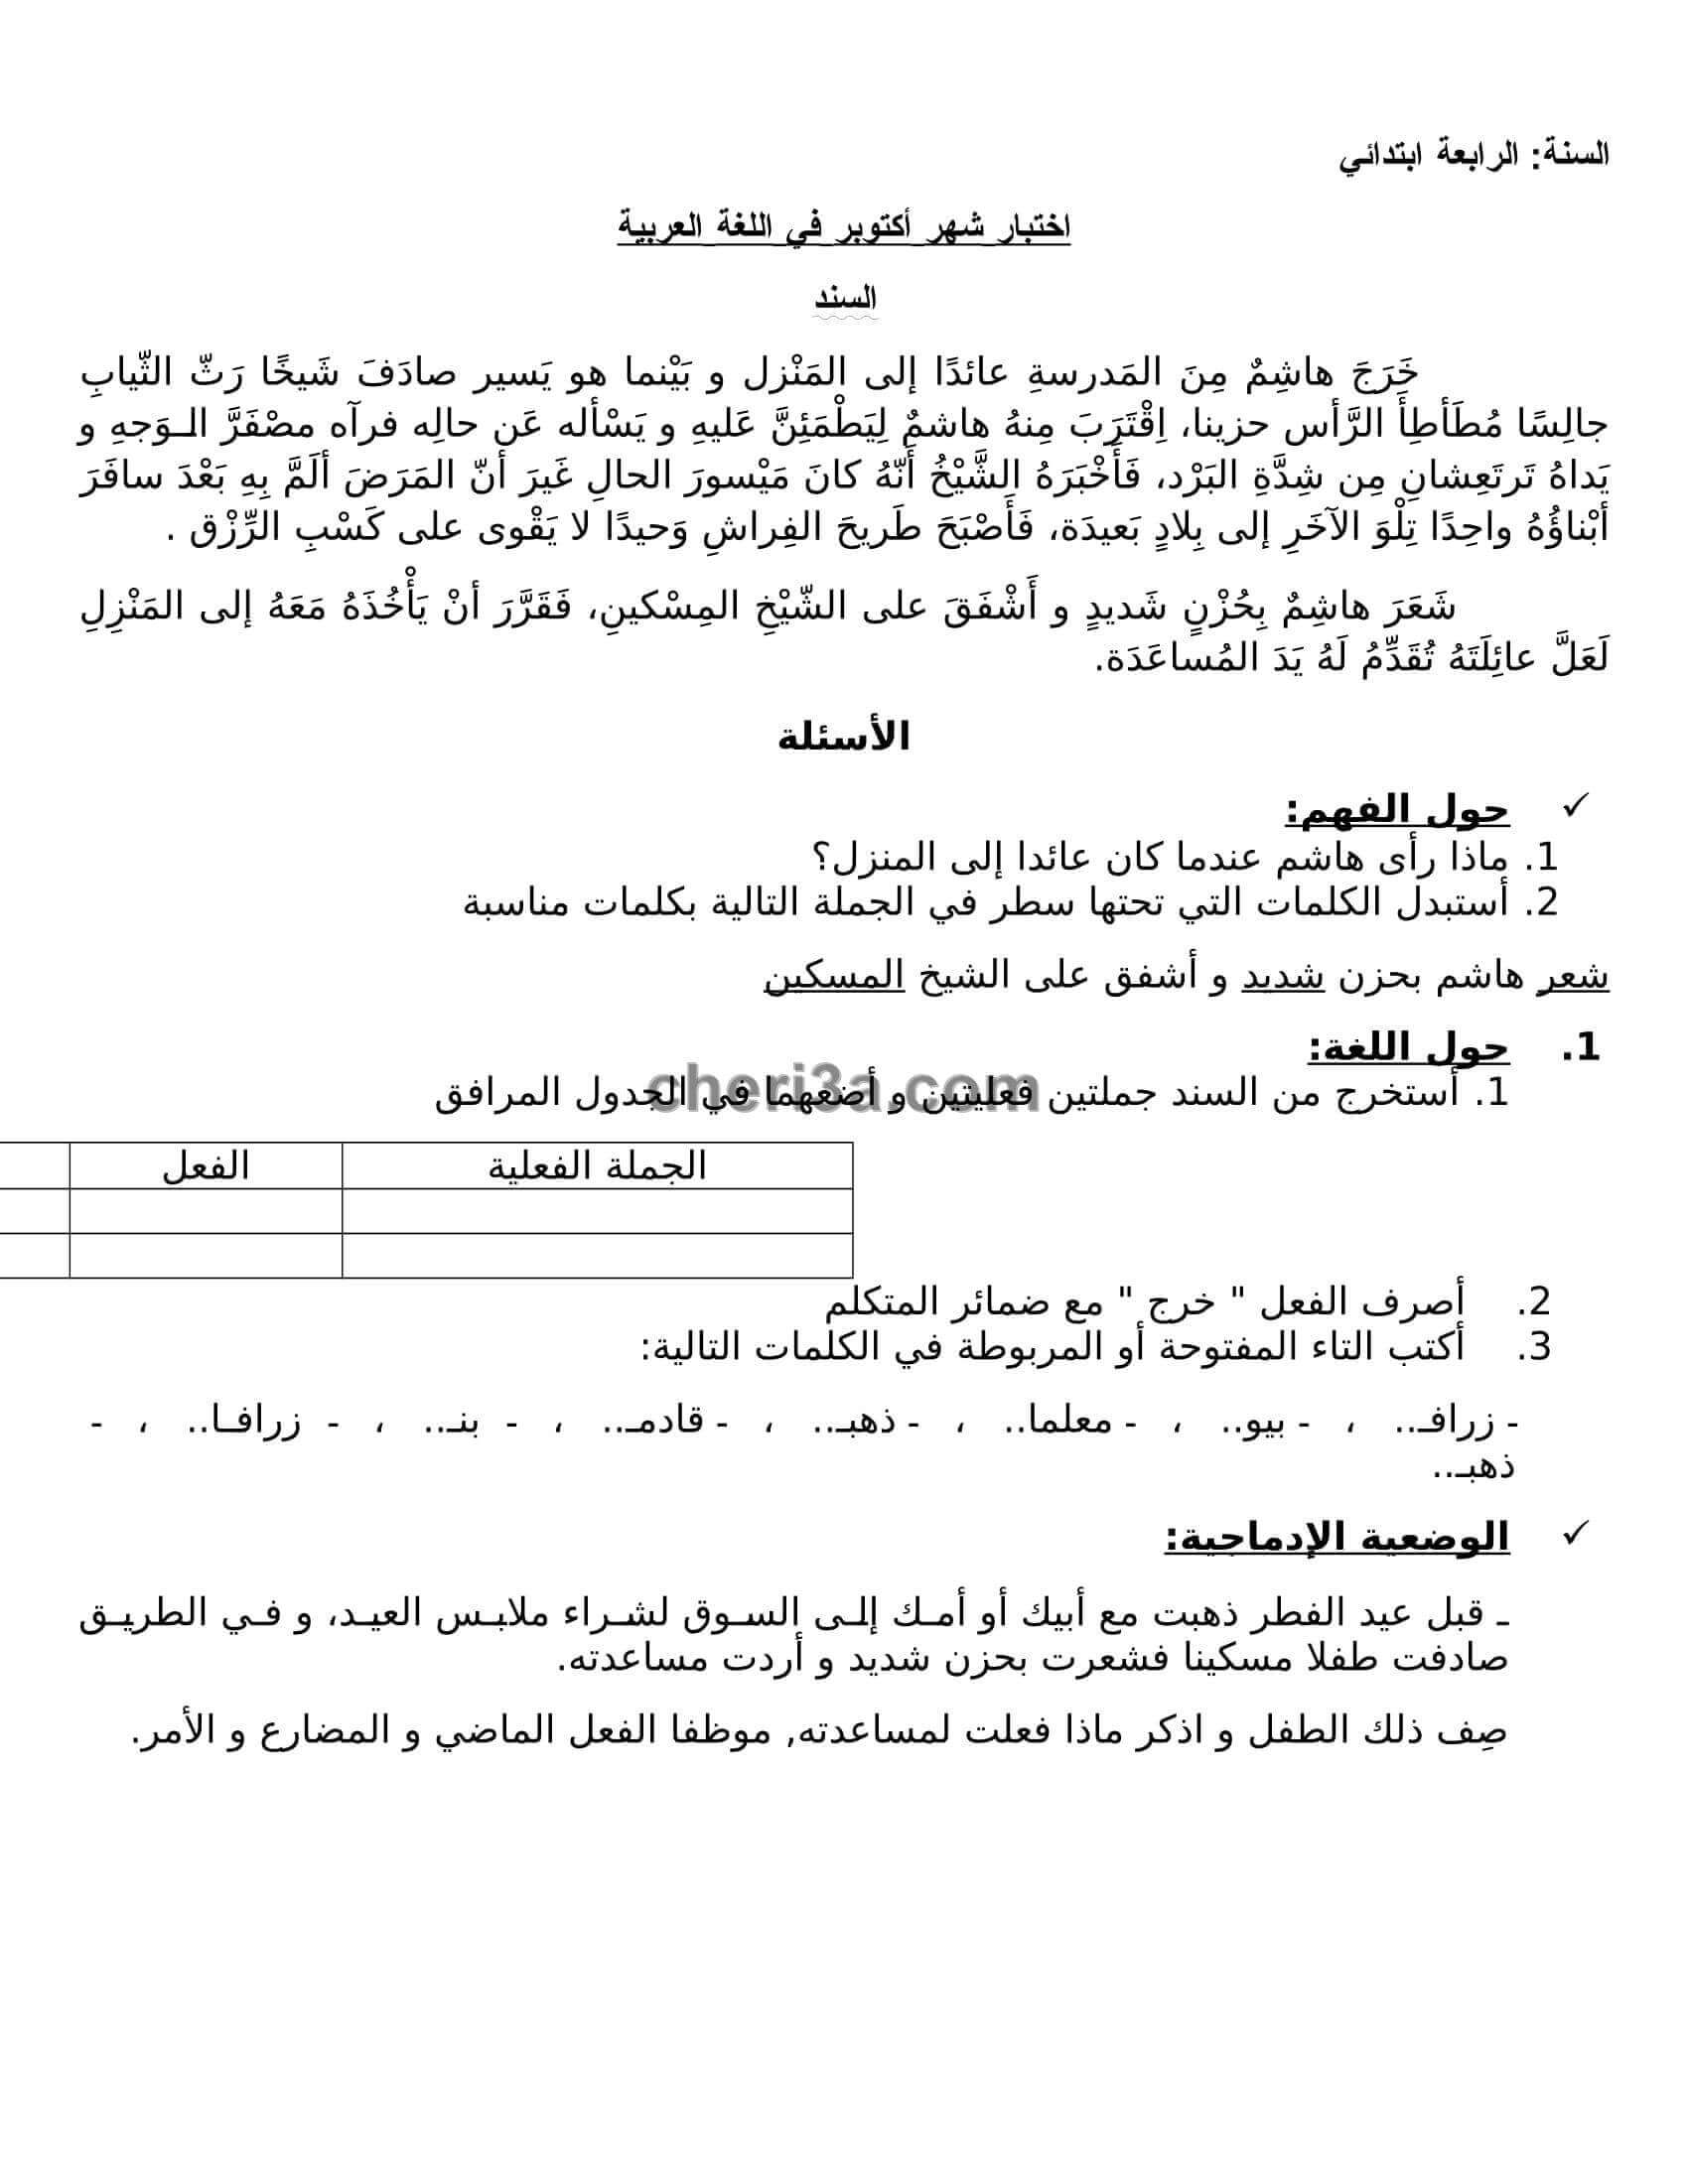 اختبار الفصل الاول للسنة الرابعة ابتدائي في مادة اللغة العربية 3